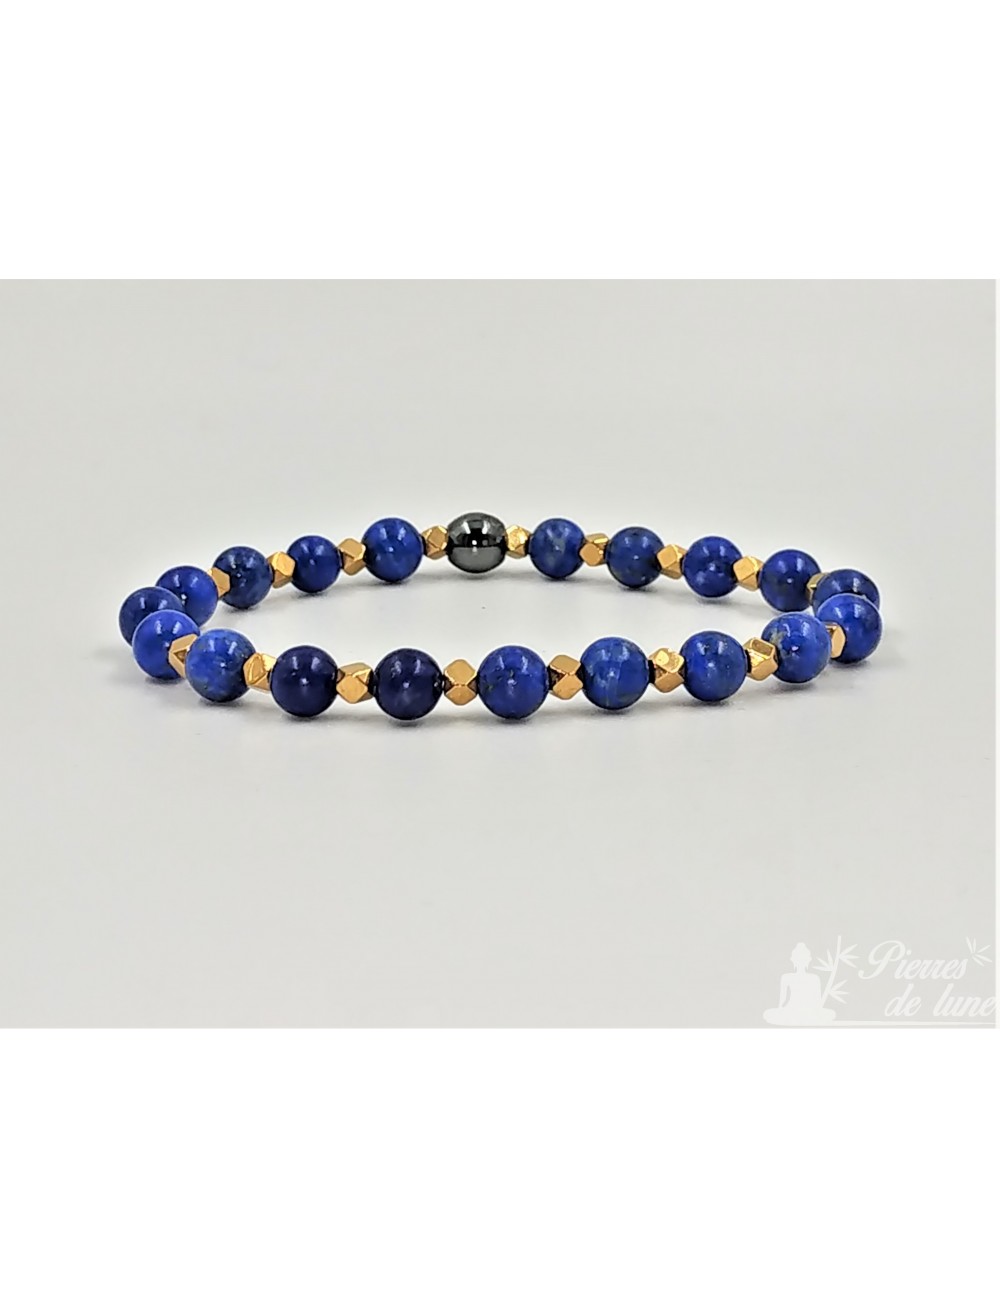 Création bracelet en pierre 6 mm Lapis Lazuli et Hématite dorée facetté